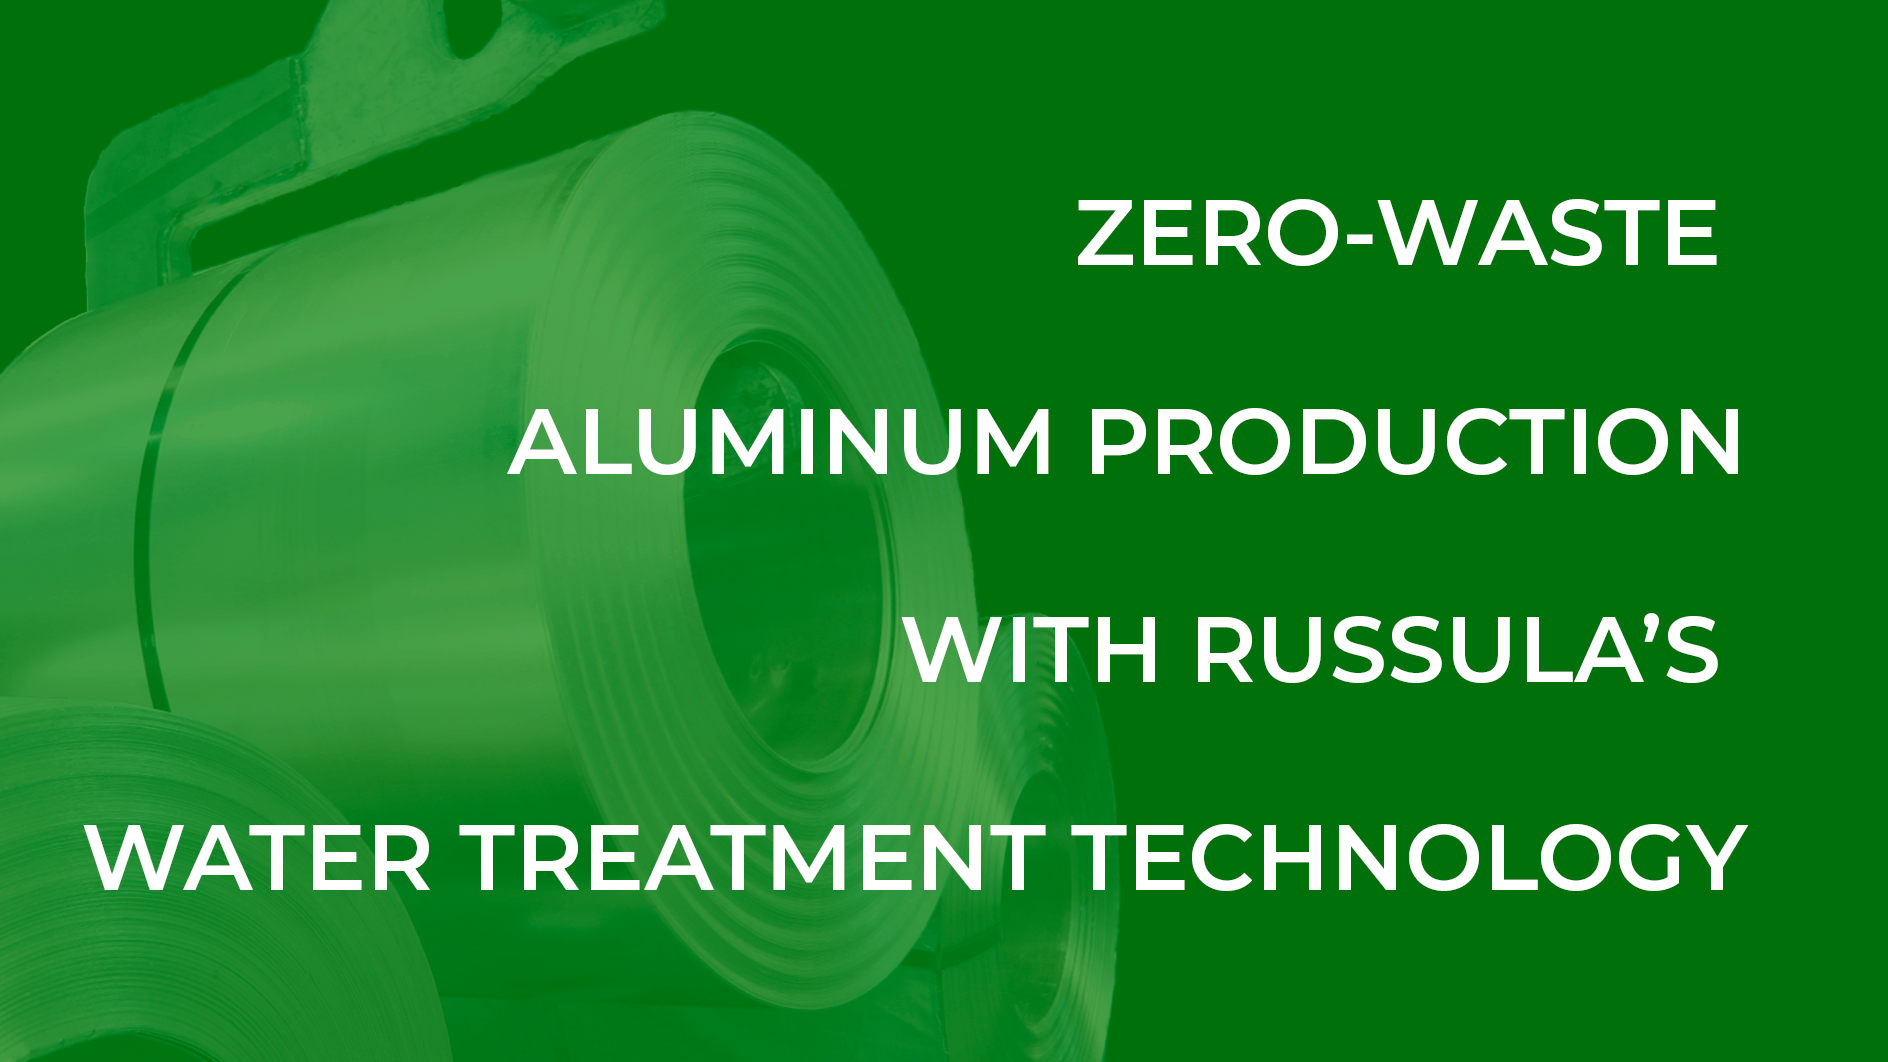 Zerowaste aluminum production